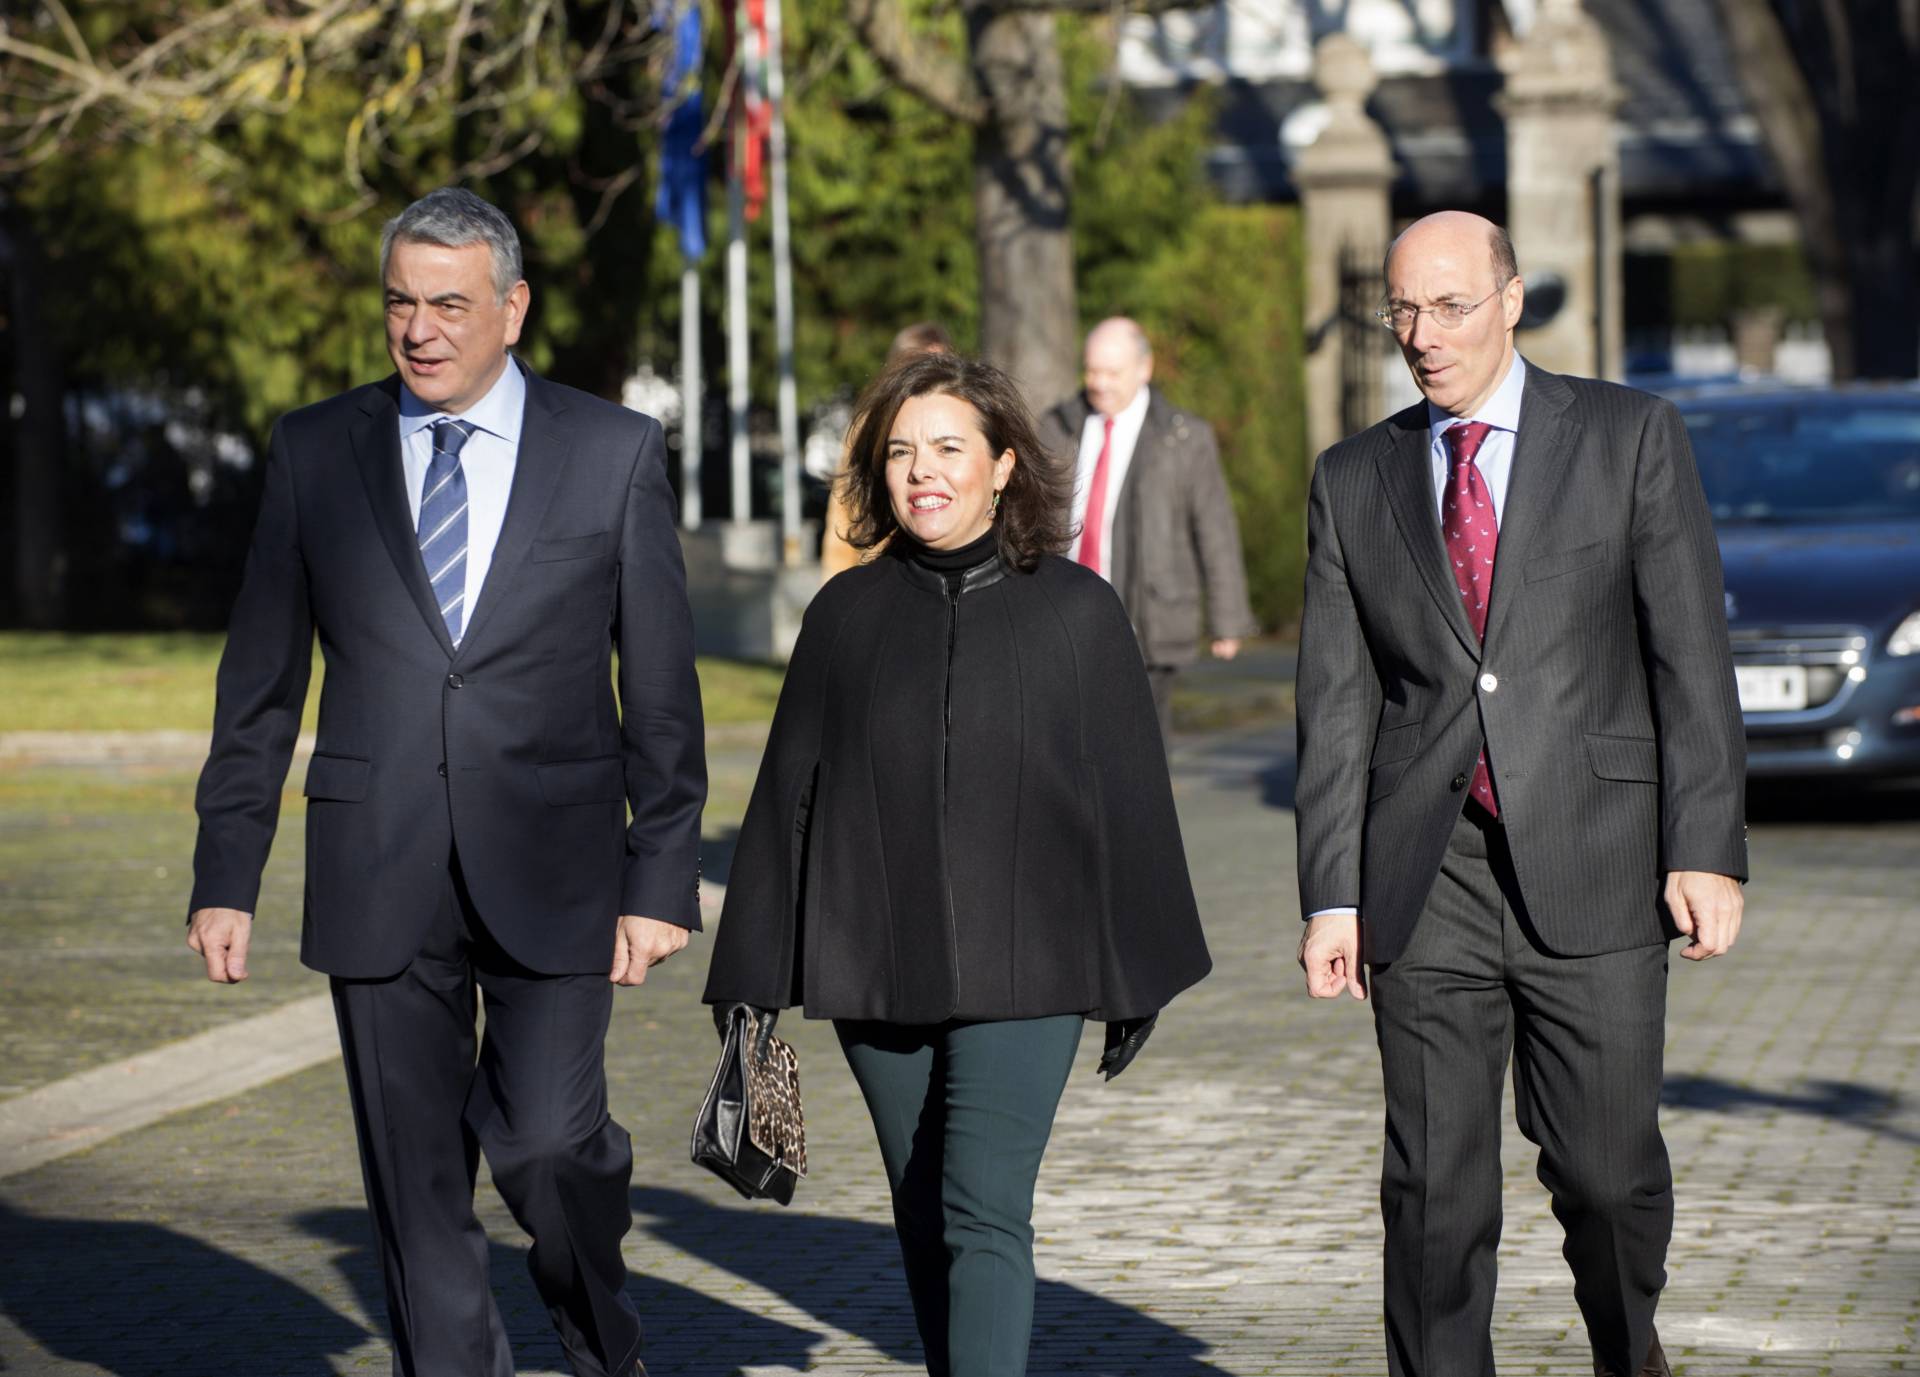 El nuevo delegado del Gobierno en Euskadi, Javier de Andrés, la vicepresidenta del Gobierno, Soraya Sáenz de Santamaría, y Carlos Urkijo, momentos antes del acto de toma de posesión.